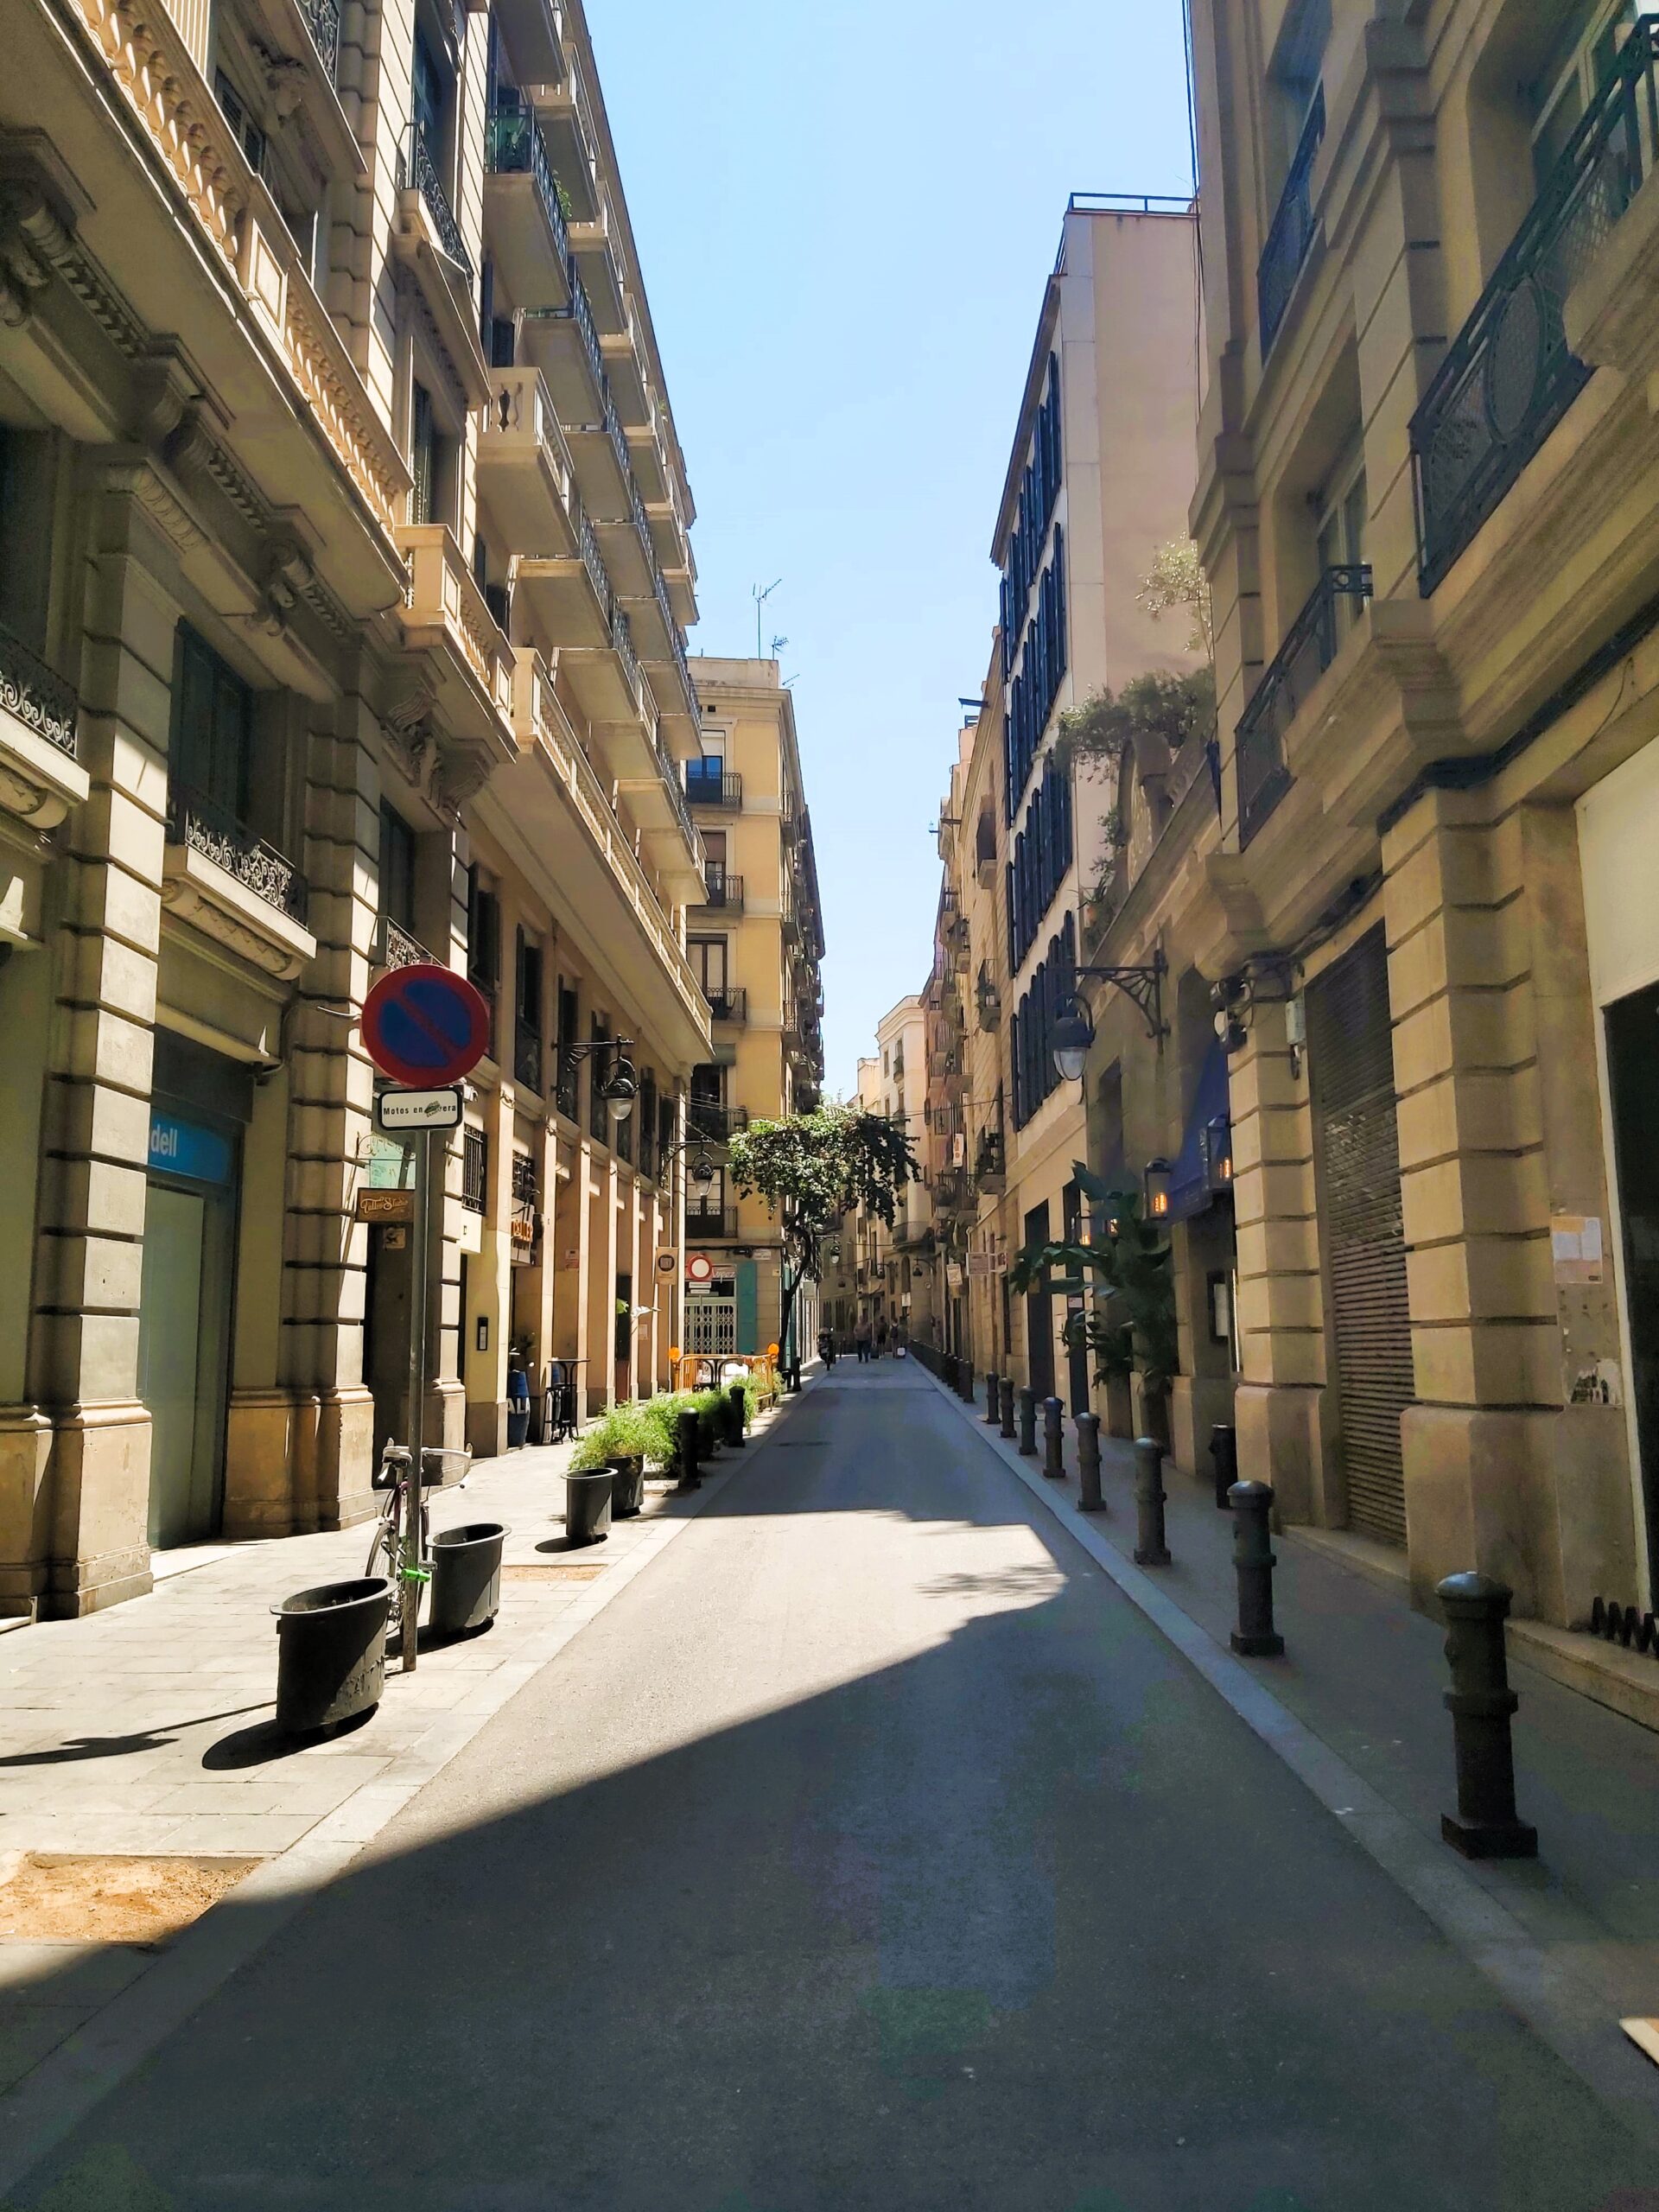 A deserted street in Barcelona, Spain